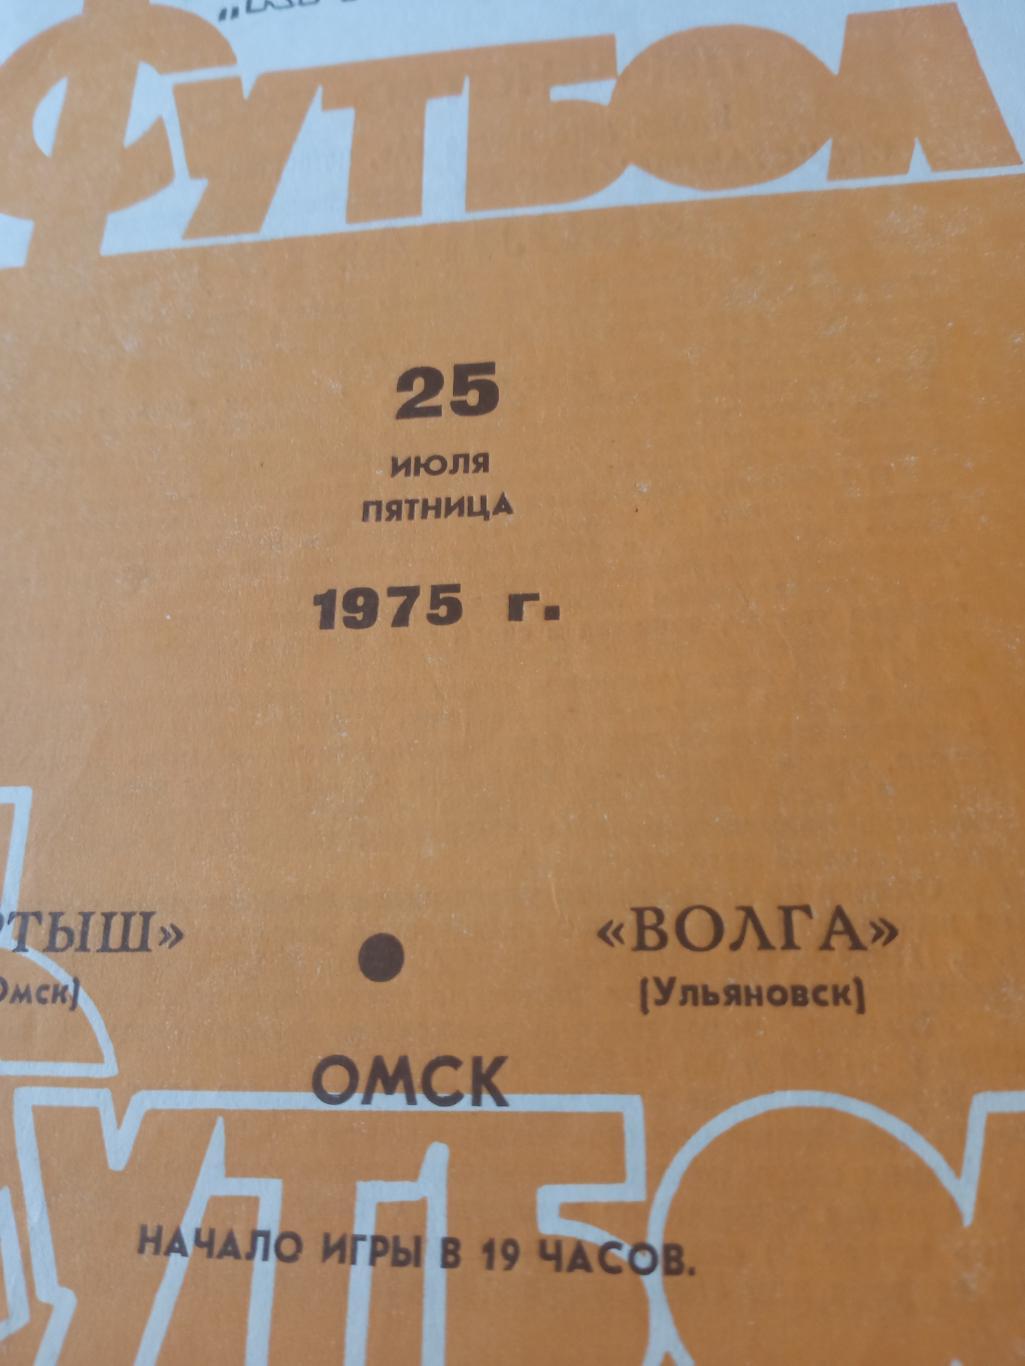 Иртыш Омск - Волга Ульяновск. 25 июля 1975 год